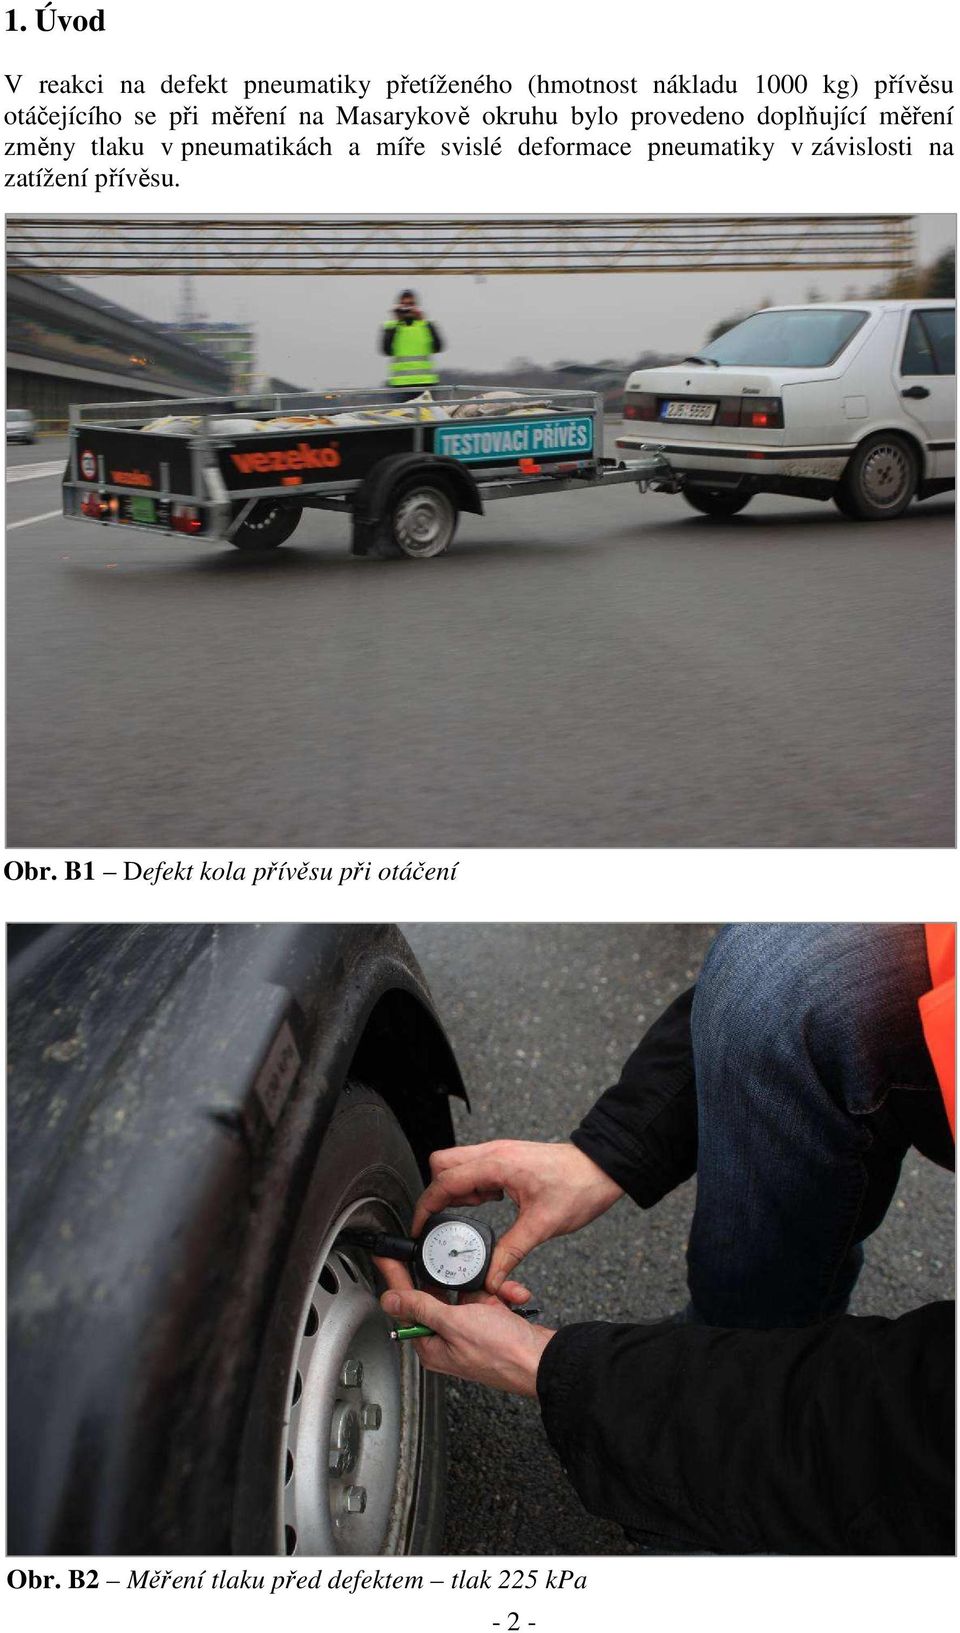 tlaku v pneumatikách a míře svislé deformace pneumatiky v závislosti na zatížení přívěsu.